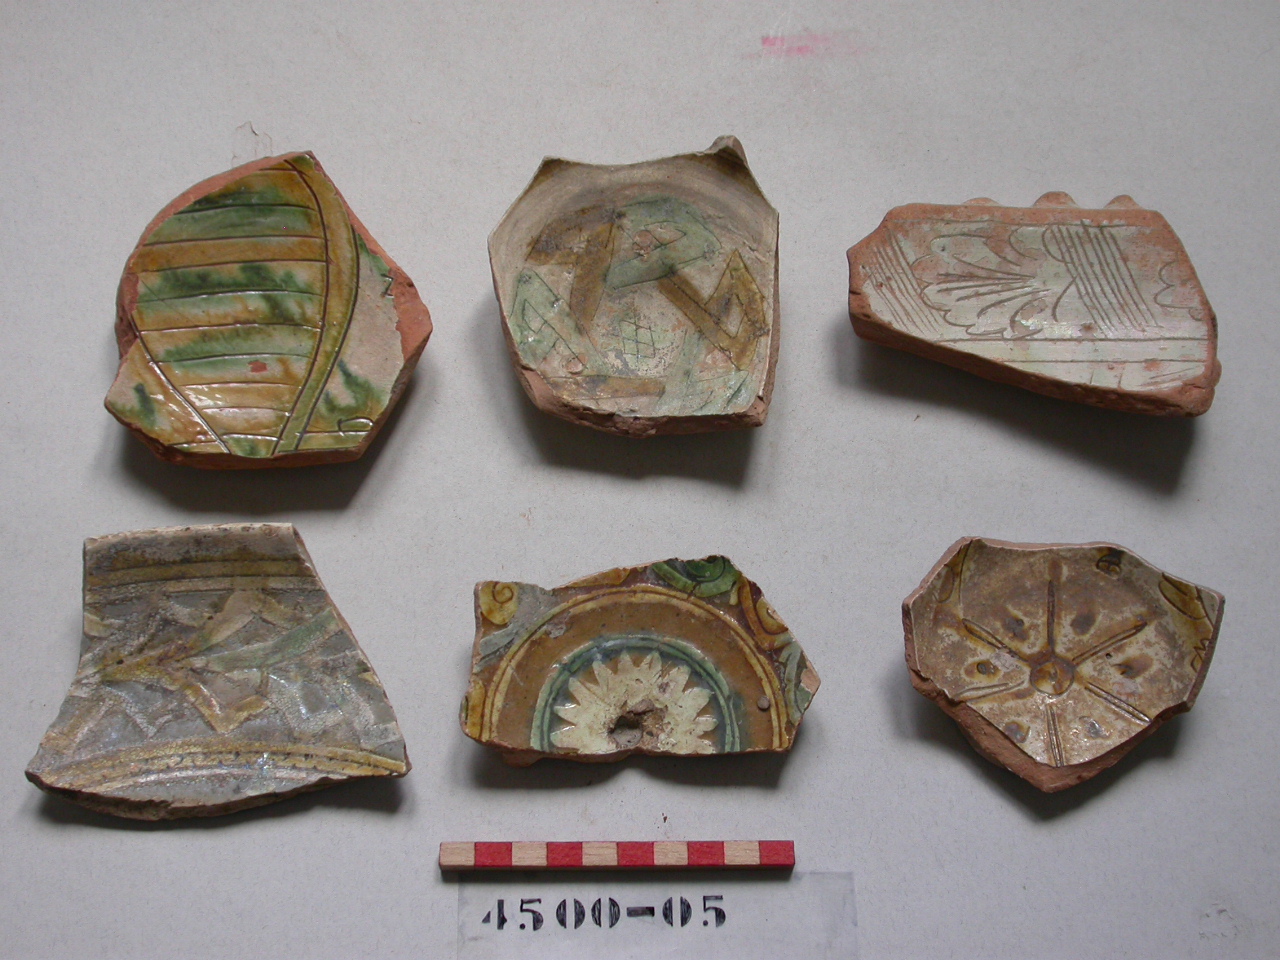 motivi decorativi geometrici (scodella, frammento) - ambito veneziano (secc. XVI/ XVII)